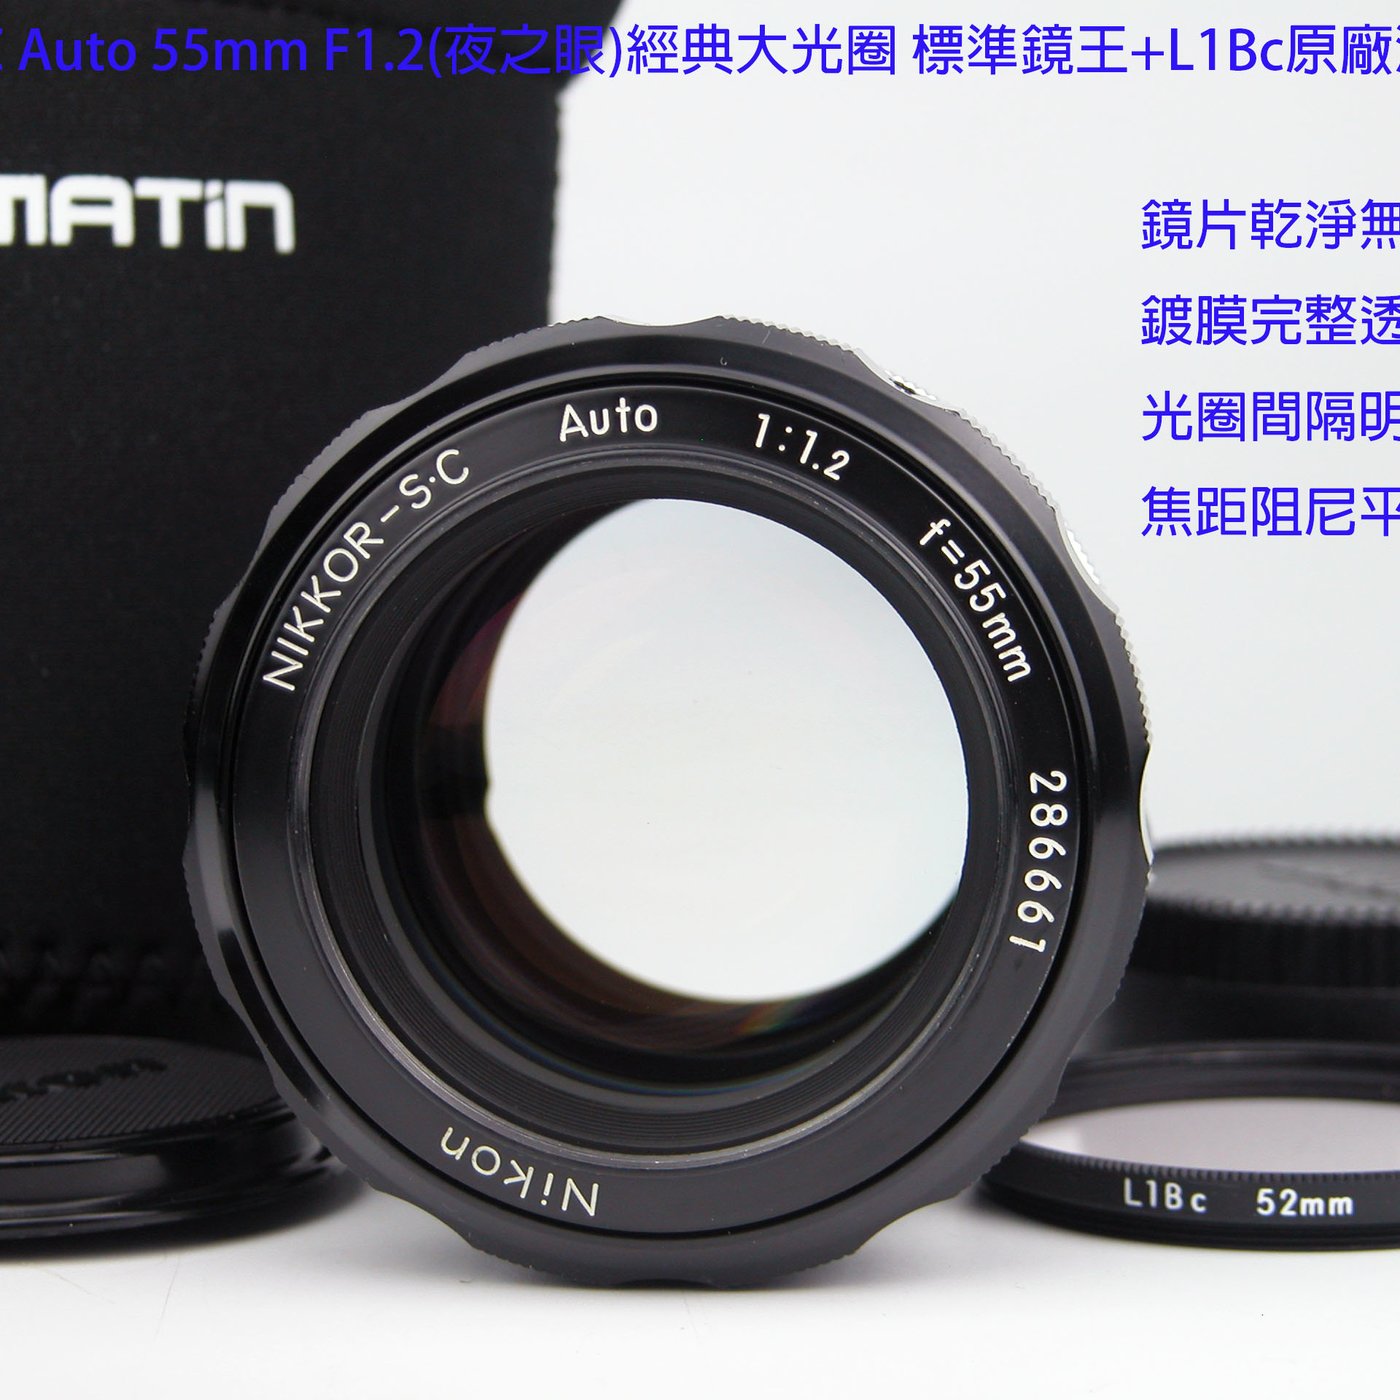 22000円nikkor s・c auto 55mm f/1.2 - レンズ(単焦点)